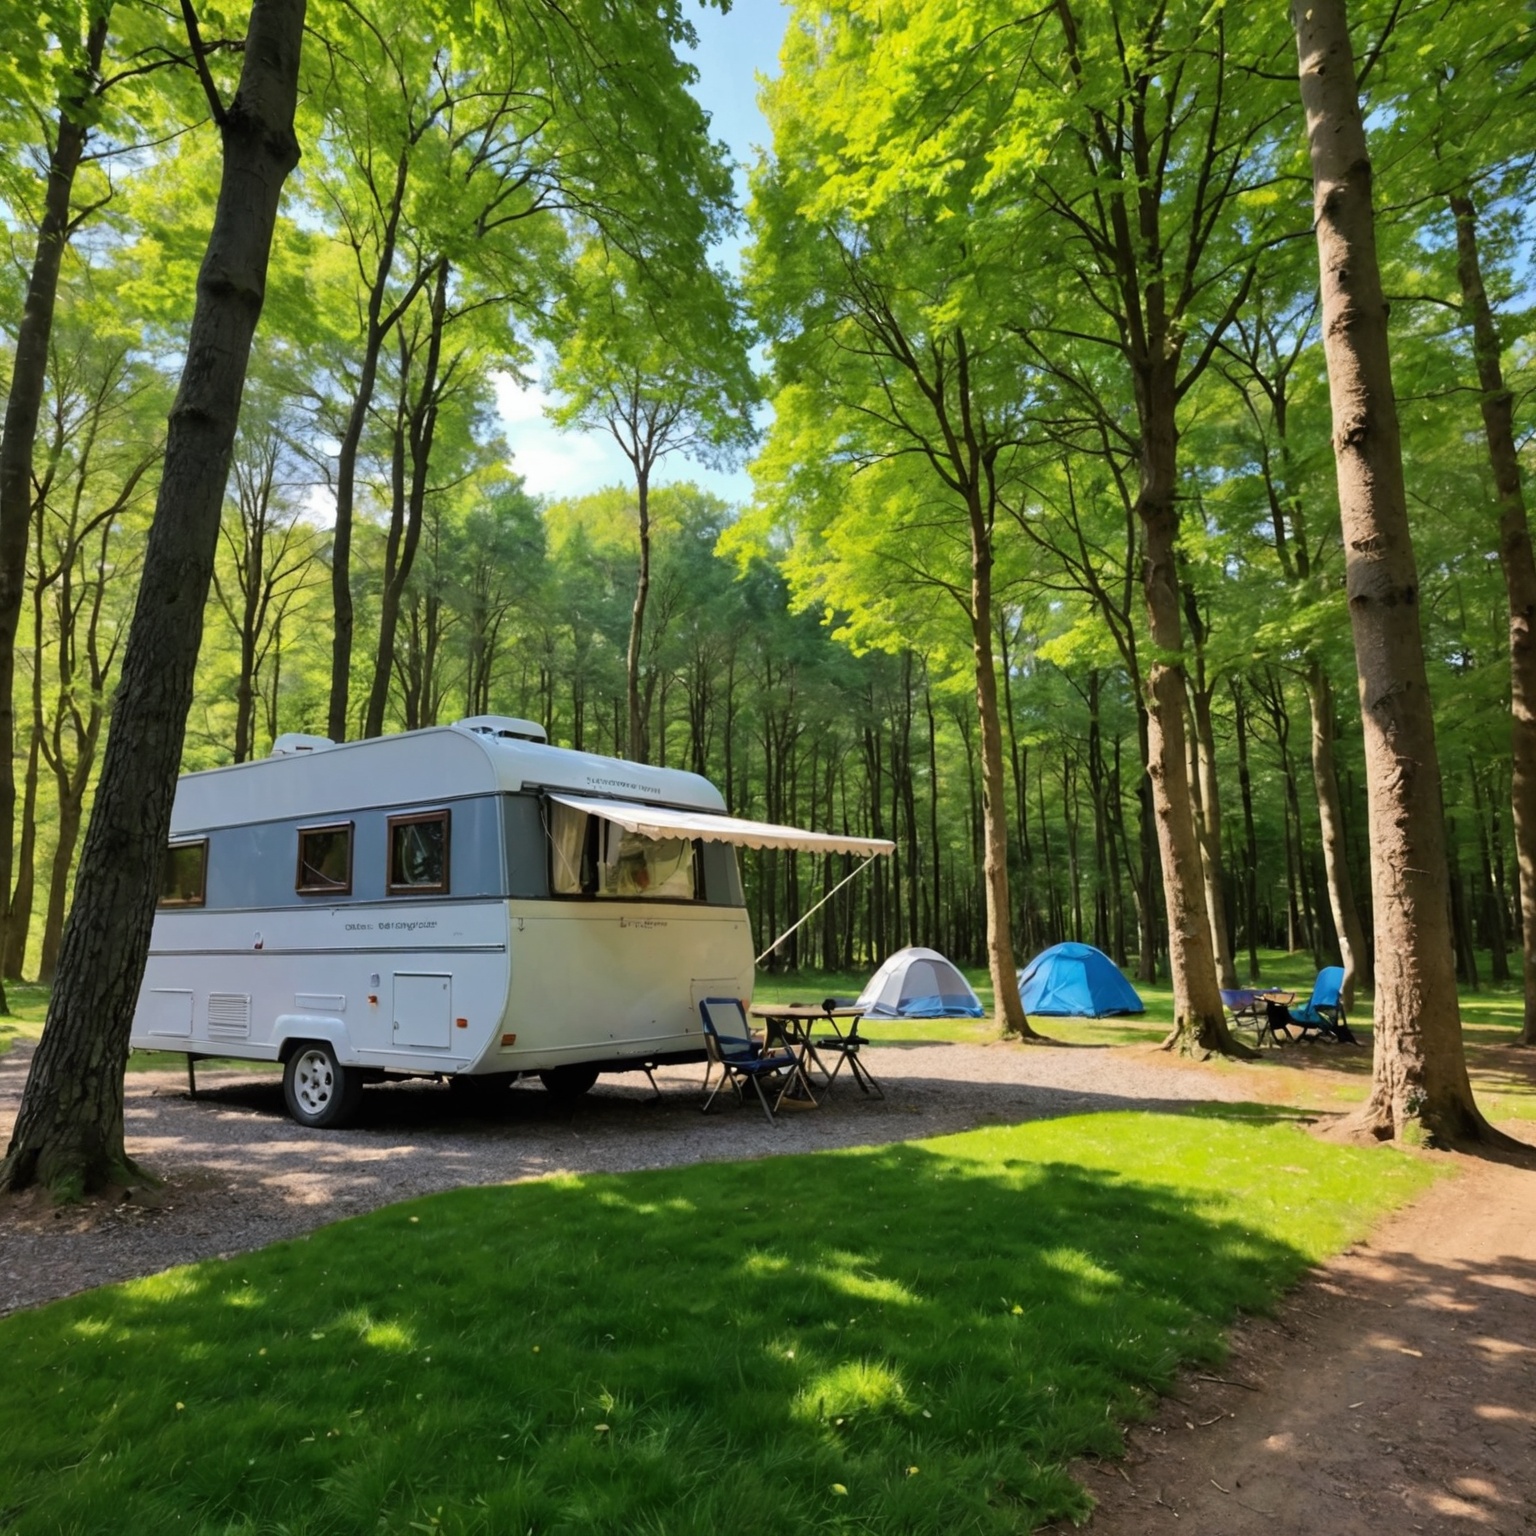 Vacances Économiques en Bretagne: Trouvez le Camping Idéal à Petit Prix!